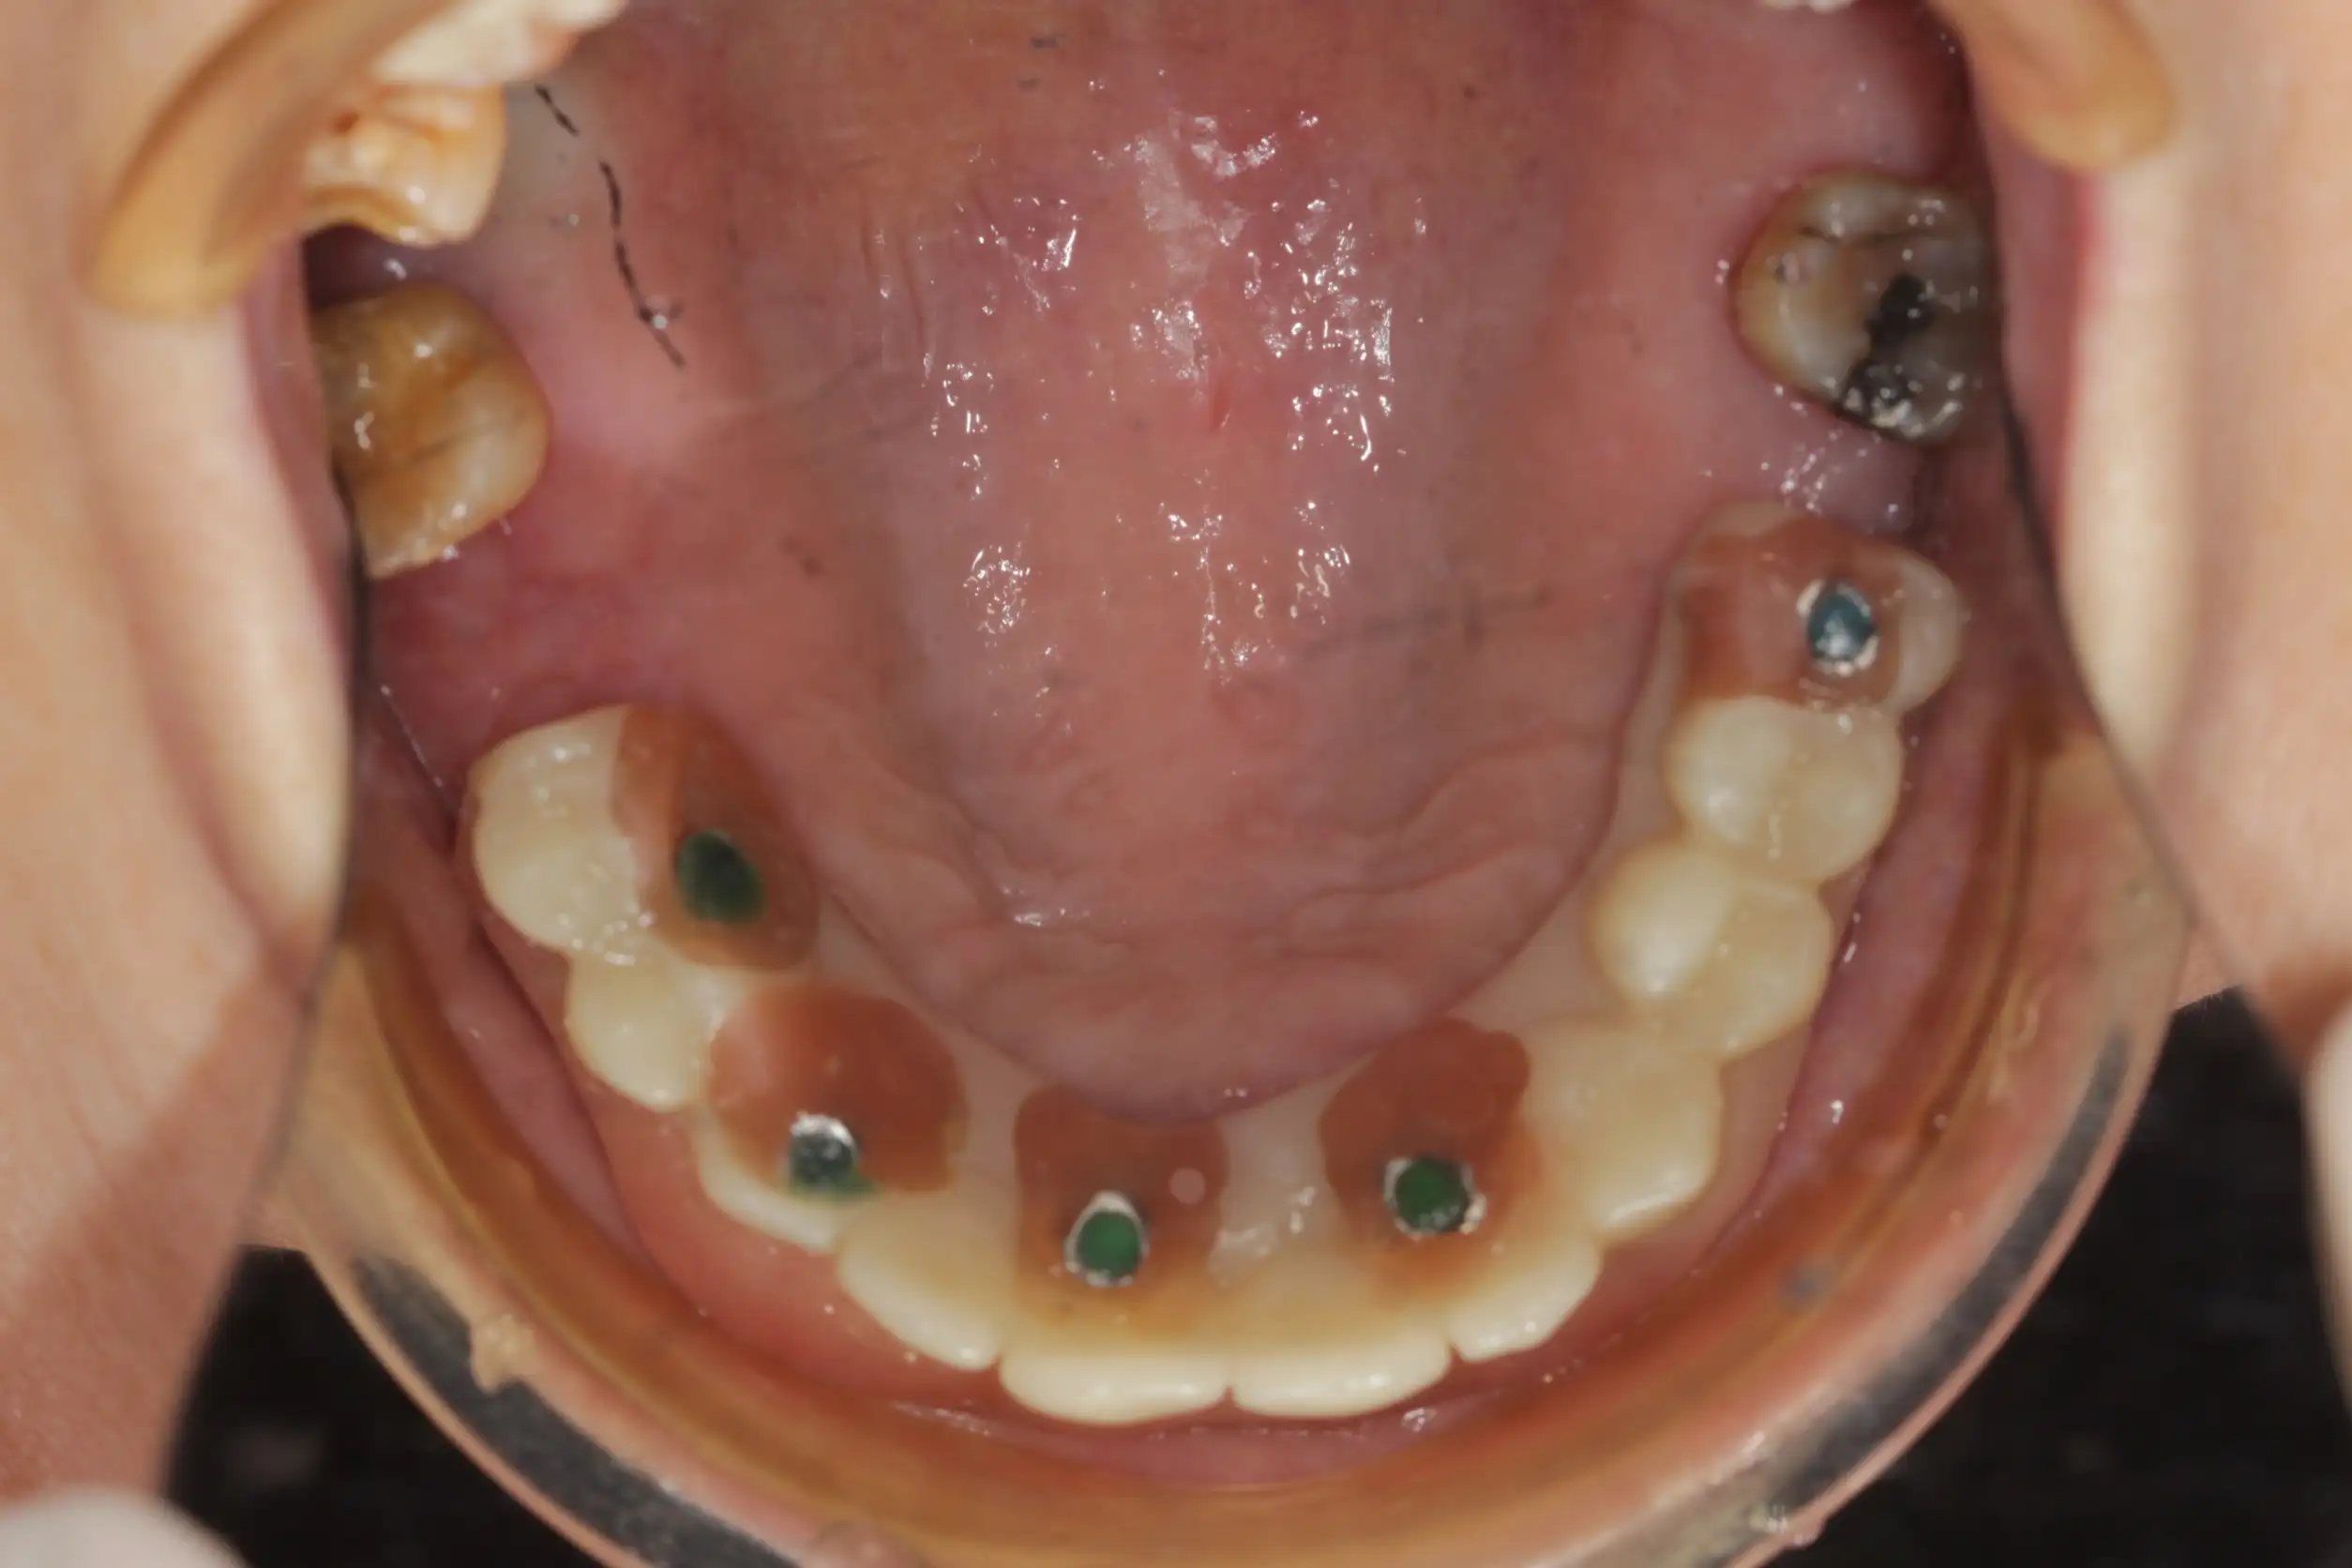 漾潔牙醫診所:全口重建 全口植牙案例